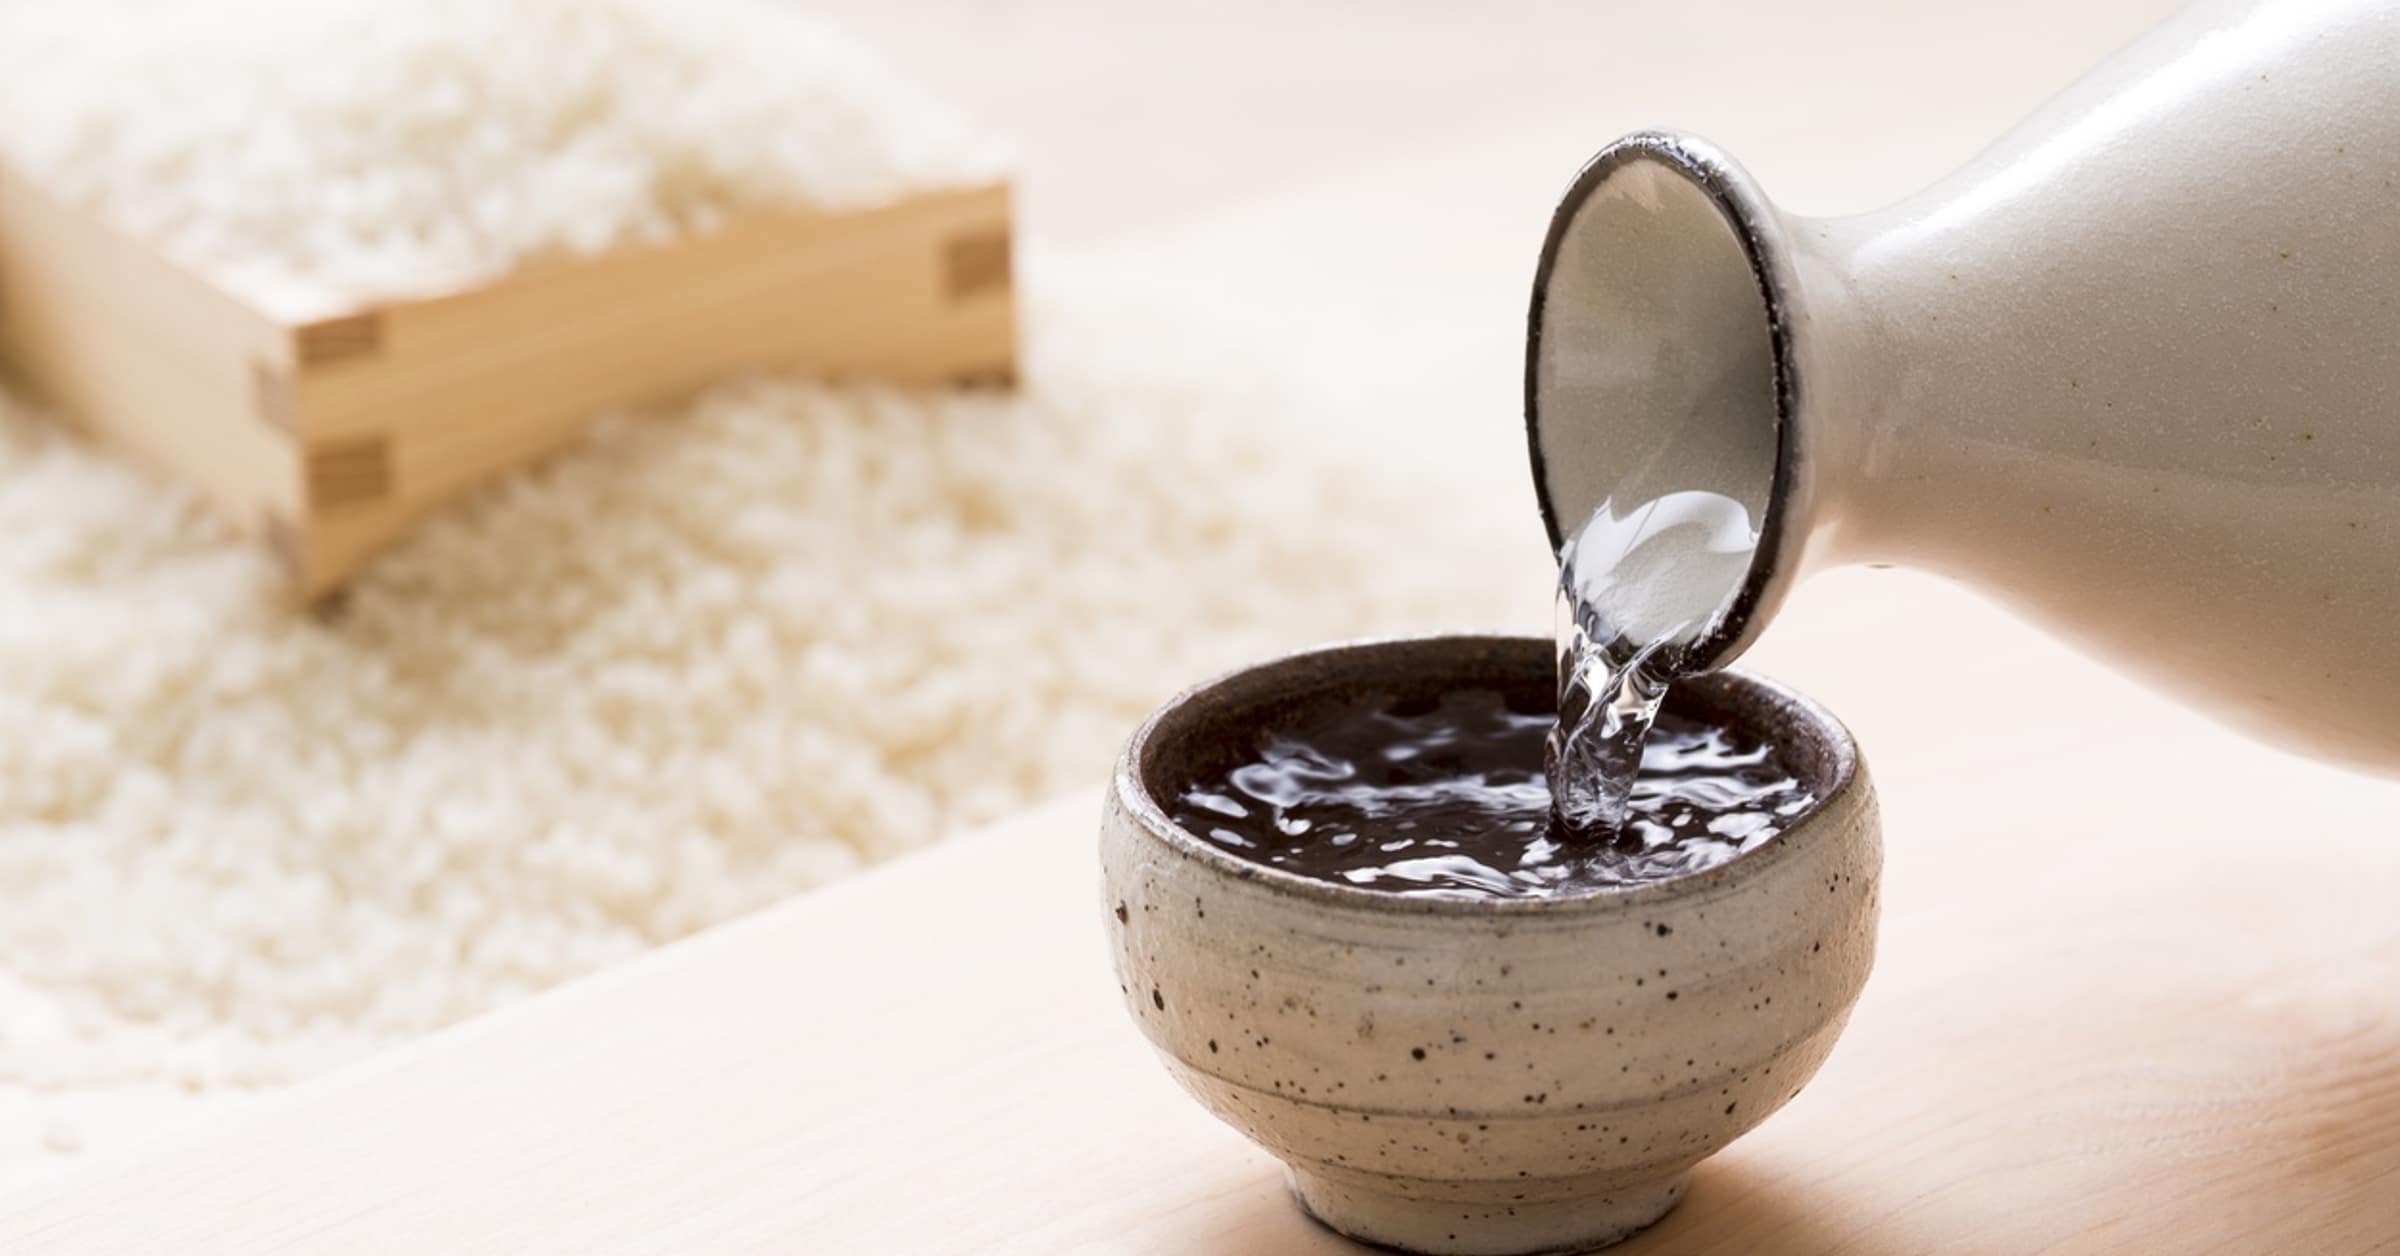 sake pairing, food pairing, sake appreciation, drink sake